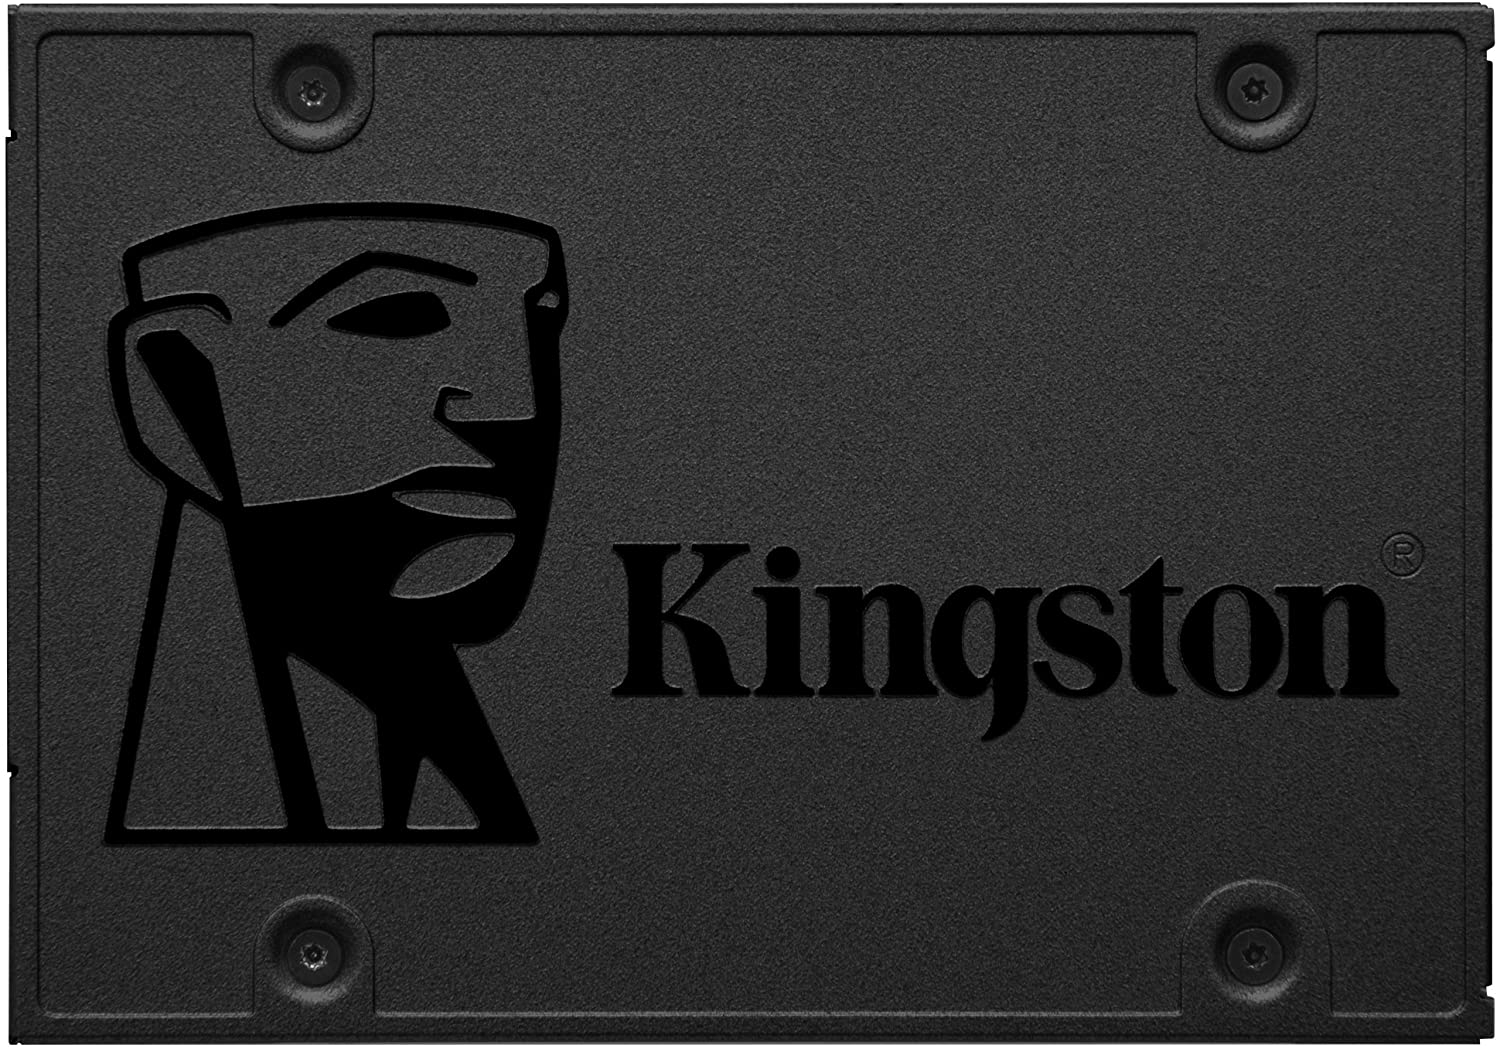 SSD Kingston da 240 GB con tecnologia 3D Nand ad un prezzo SUPER su Amazon